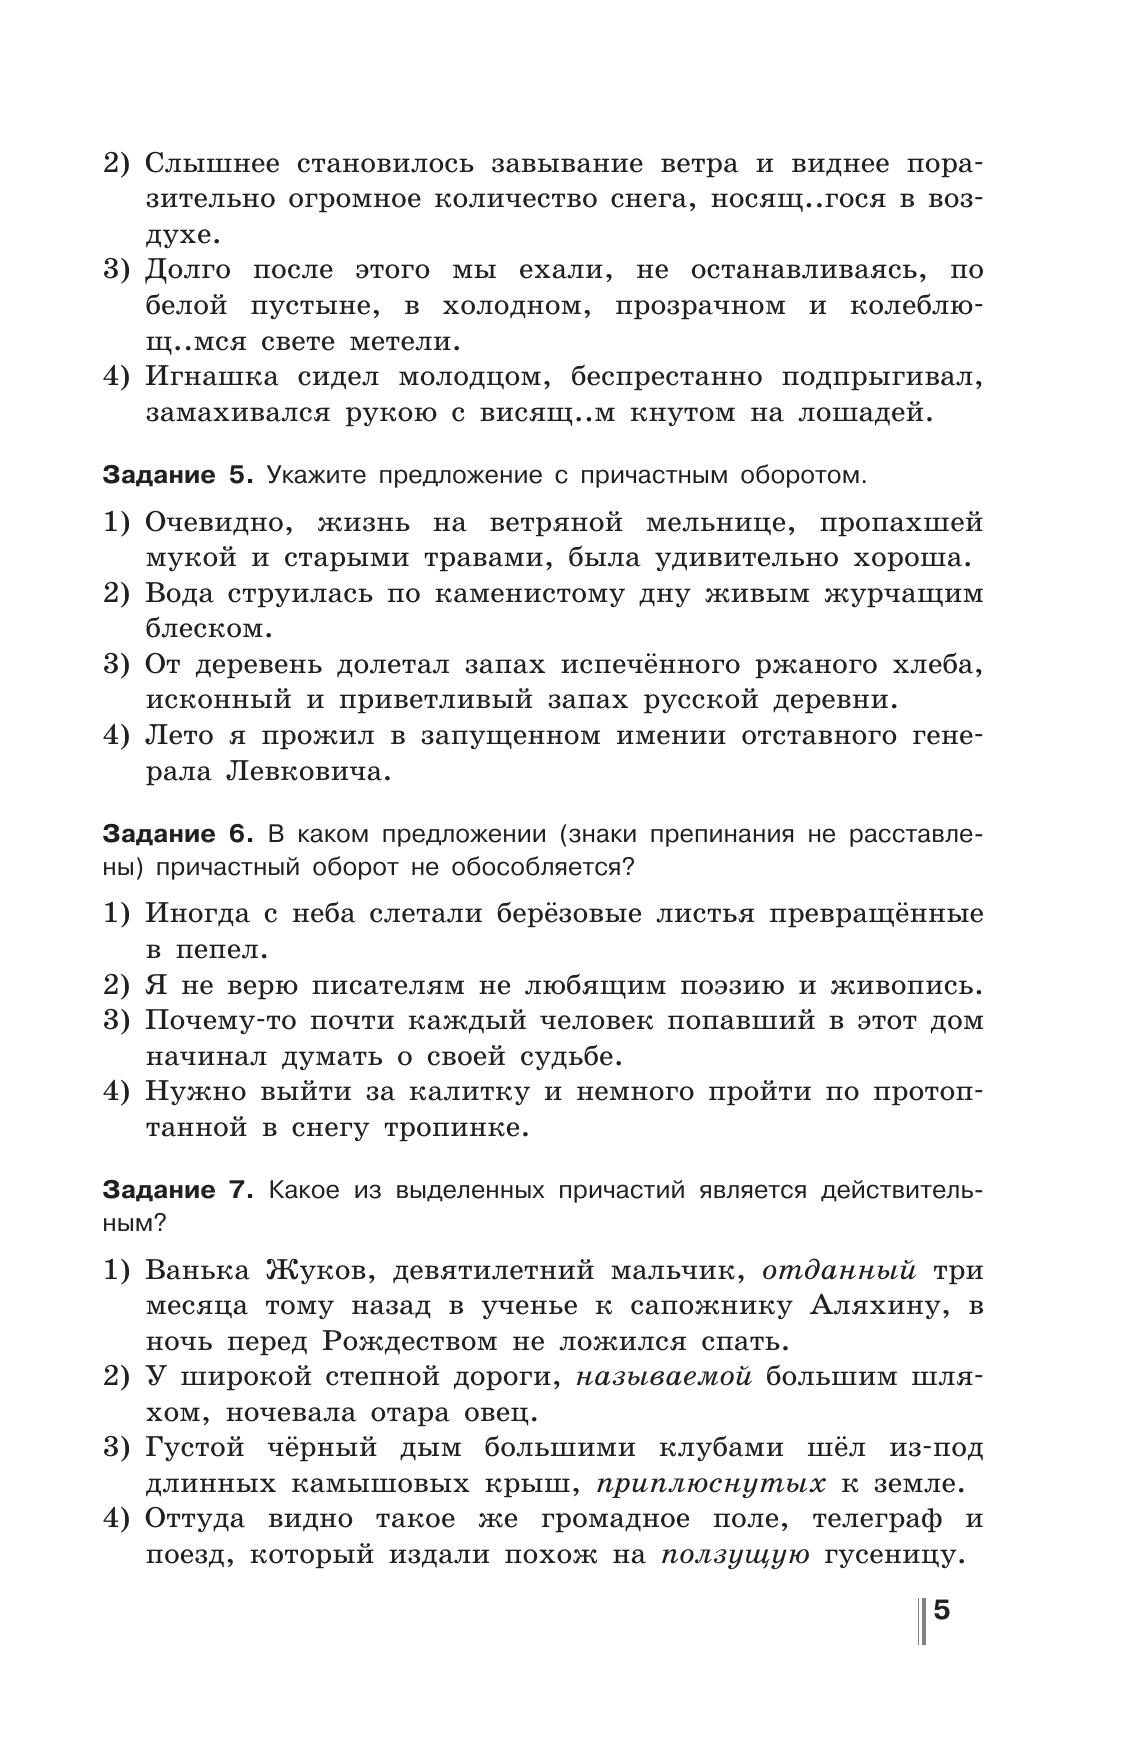 Русский язык. Готовимся к ГИА. Тесты, творческие работы, проекты. 7 класс 2